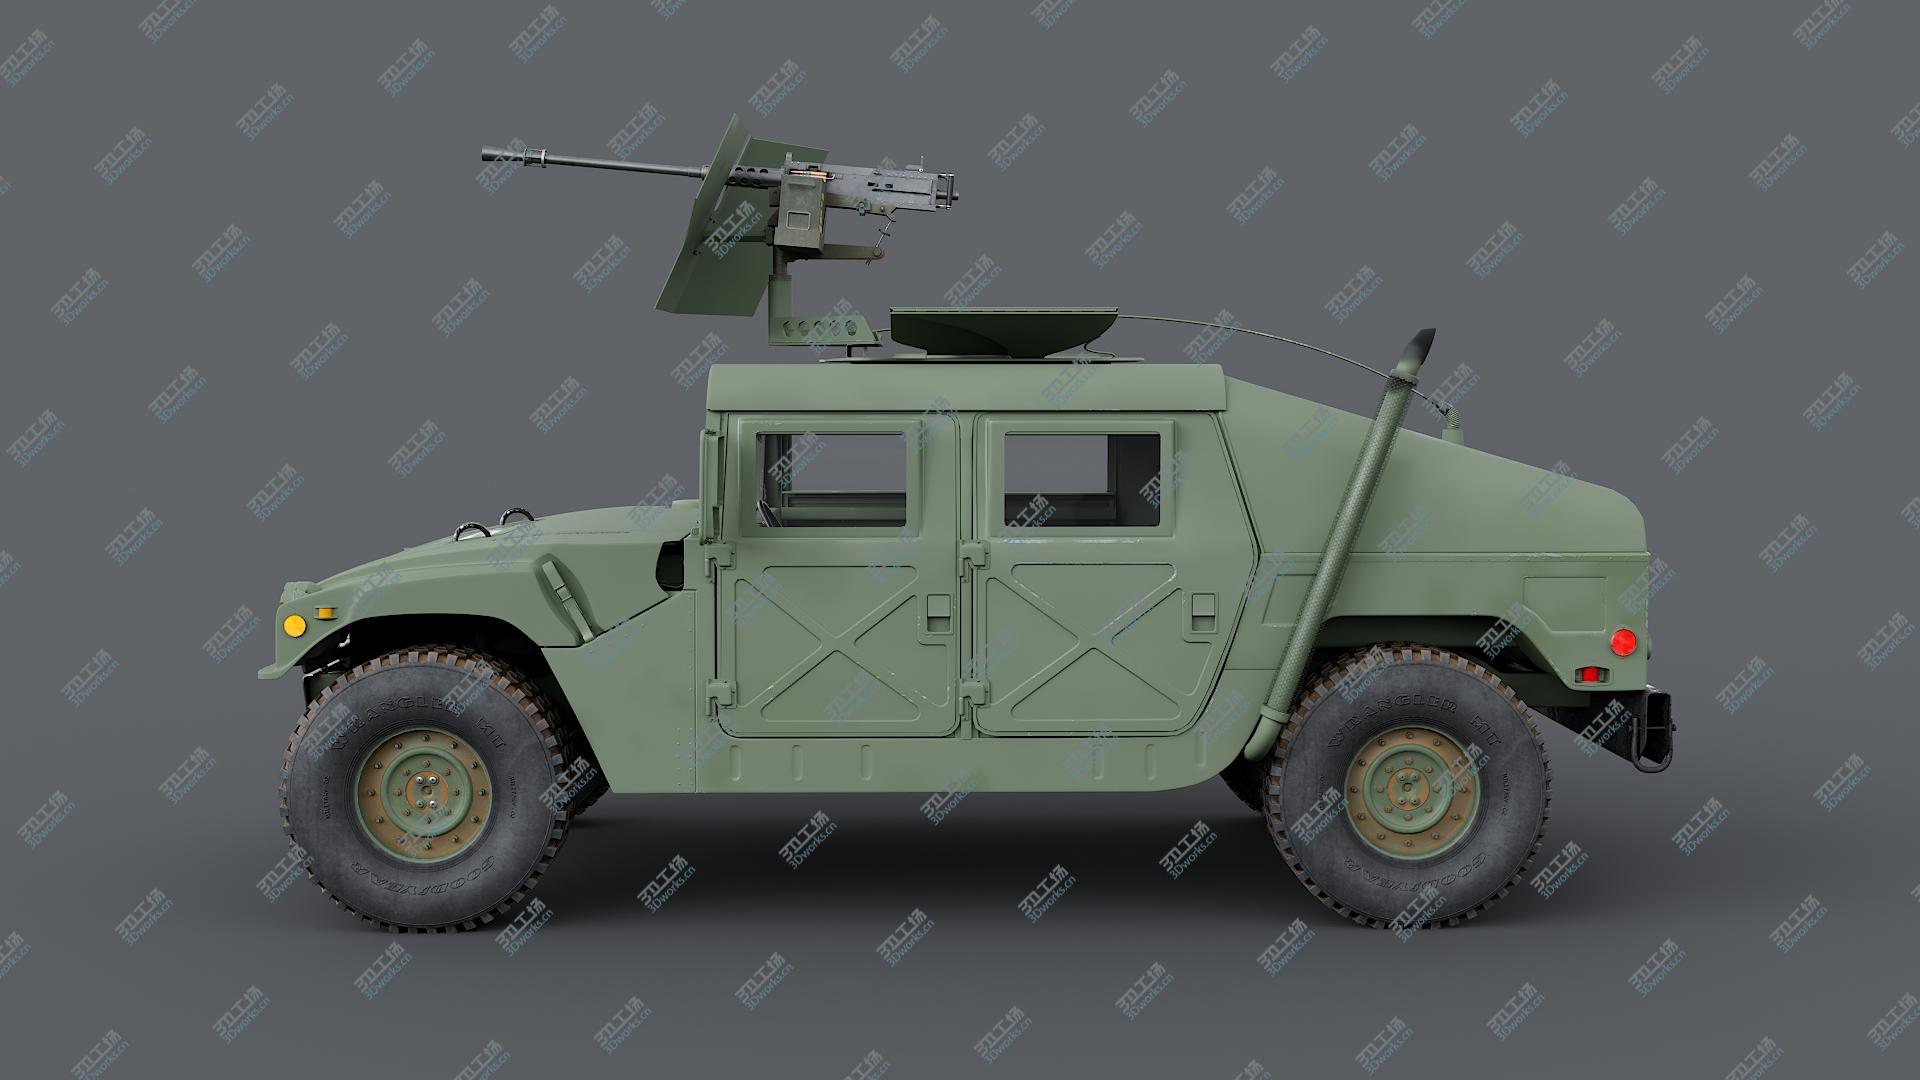 images/goods_img/202105071/3D Humvee M998 M1025 Weapons Carrier Slant Back/3.jpg